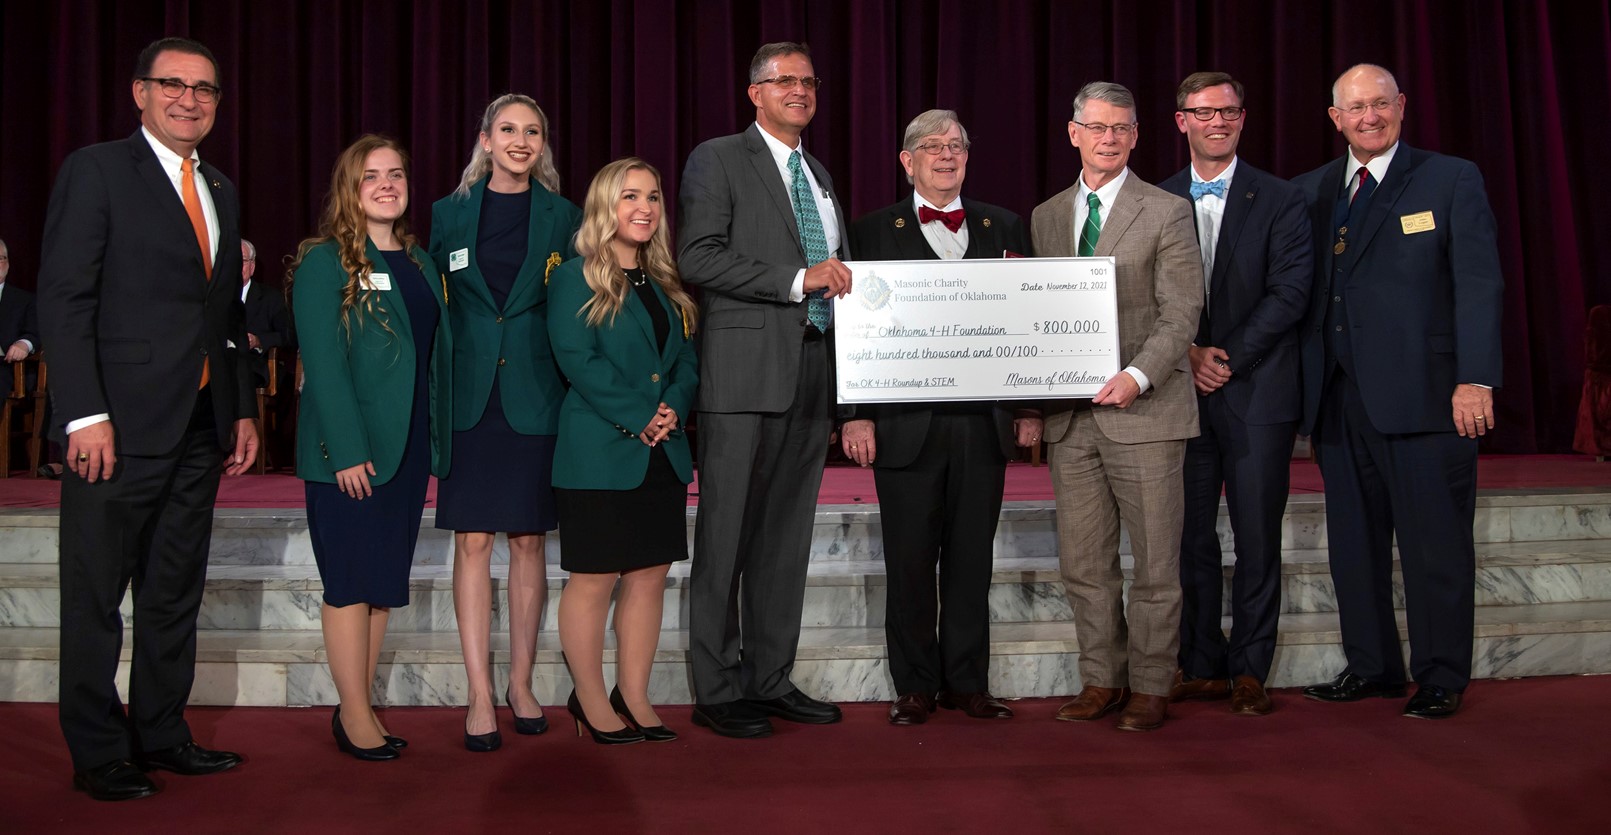 Masonic Charity Foundation of Oklahoma Gifts $800,000 to Oklahoma 4-H Foundation 